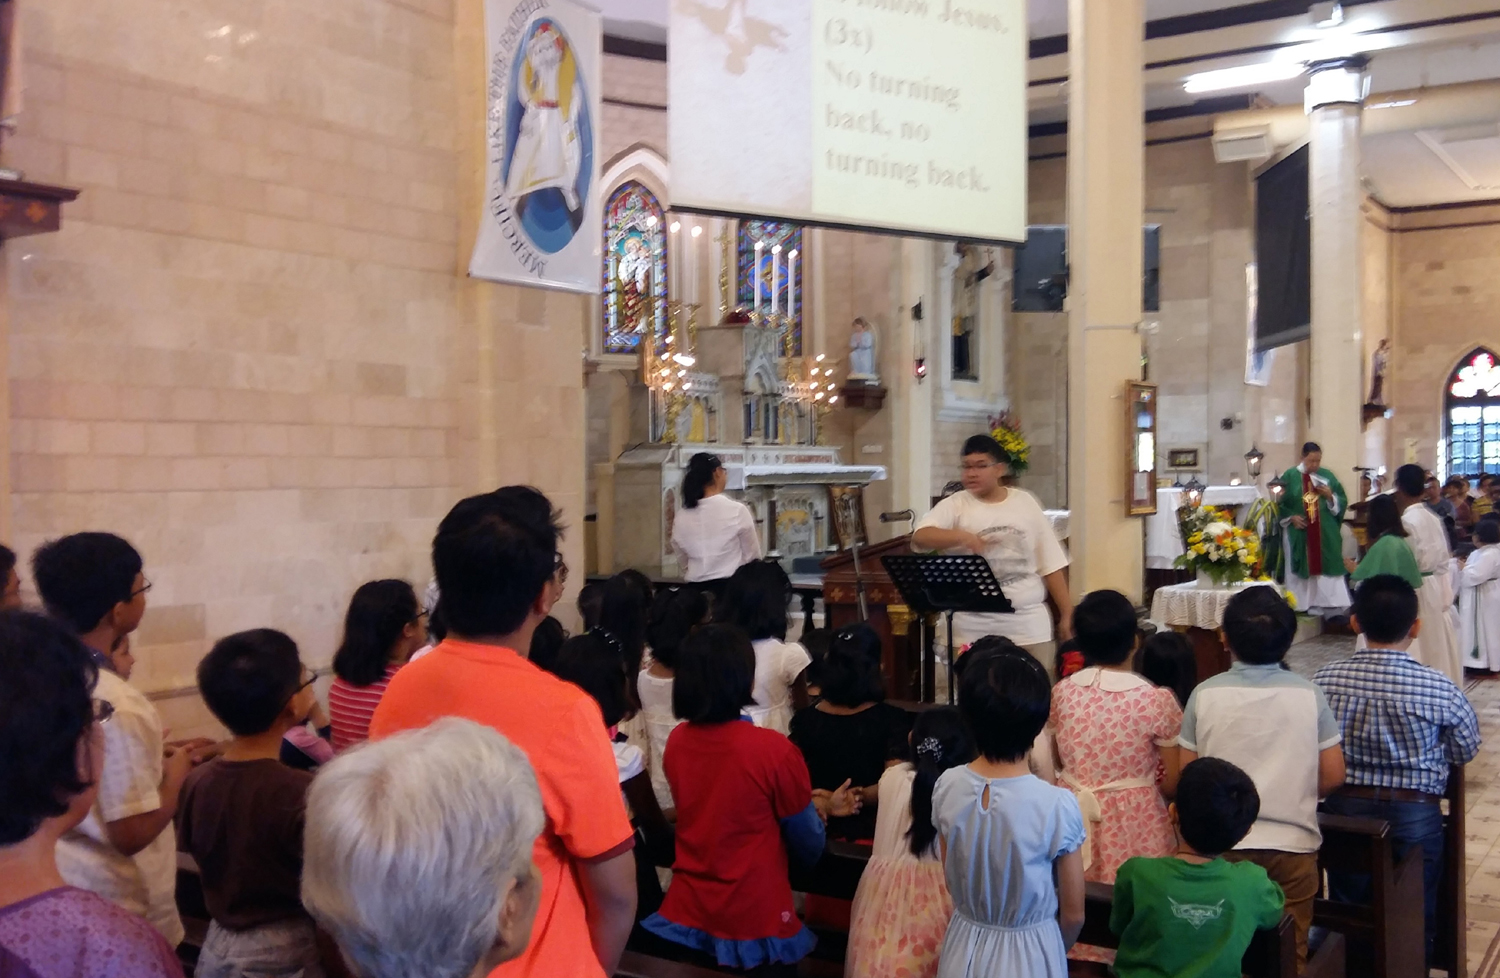 IJCC in action on Sunday morning Children's mass